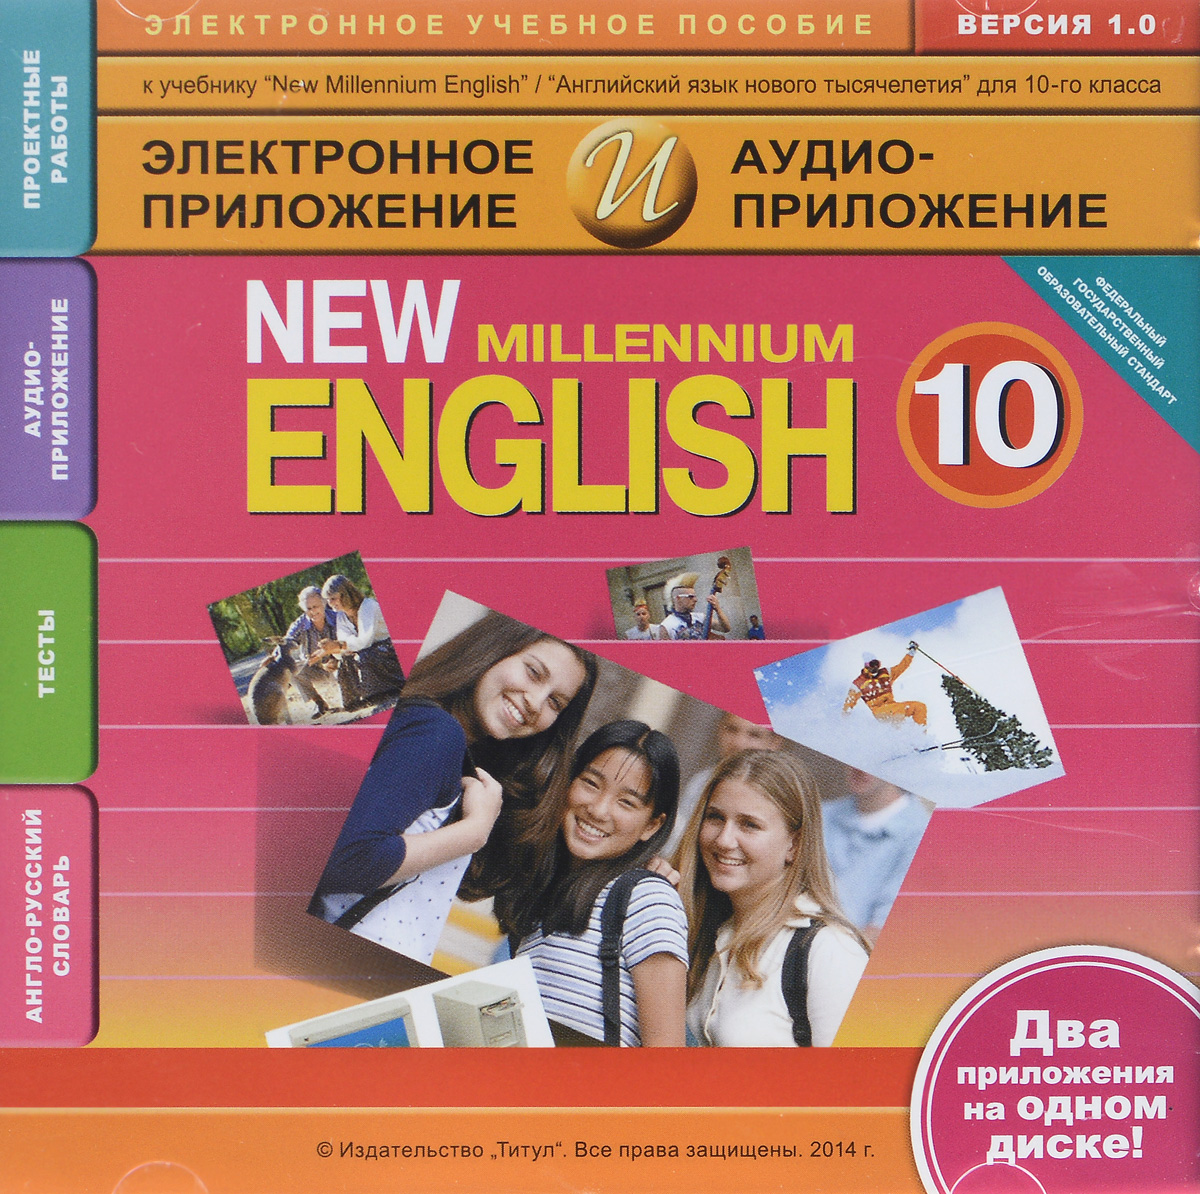 New Millennium English 10 / Английский язык нового тысячелетия. Английский язык. 10 класс. Электронное учебное пособие + аудиоприложение